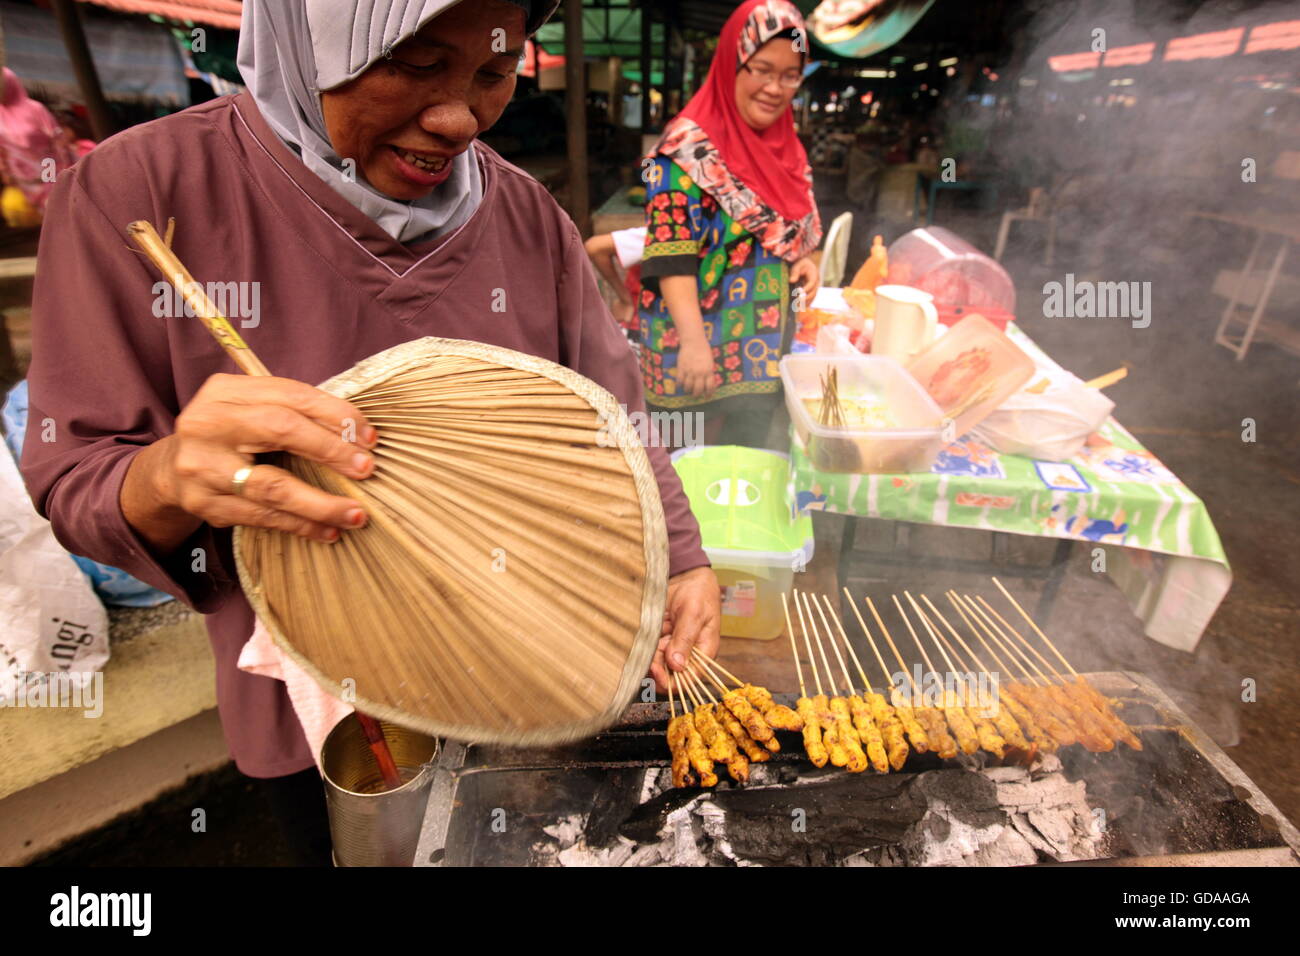 Der Alltag auf dem Markt im Zentrum der Hauptstadt Bandar Seri Begawan, Brunei Darussalam Koenigreich im auf Borneo en Suedostasi Foto de stock